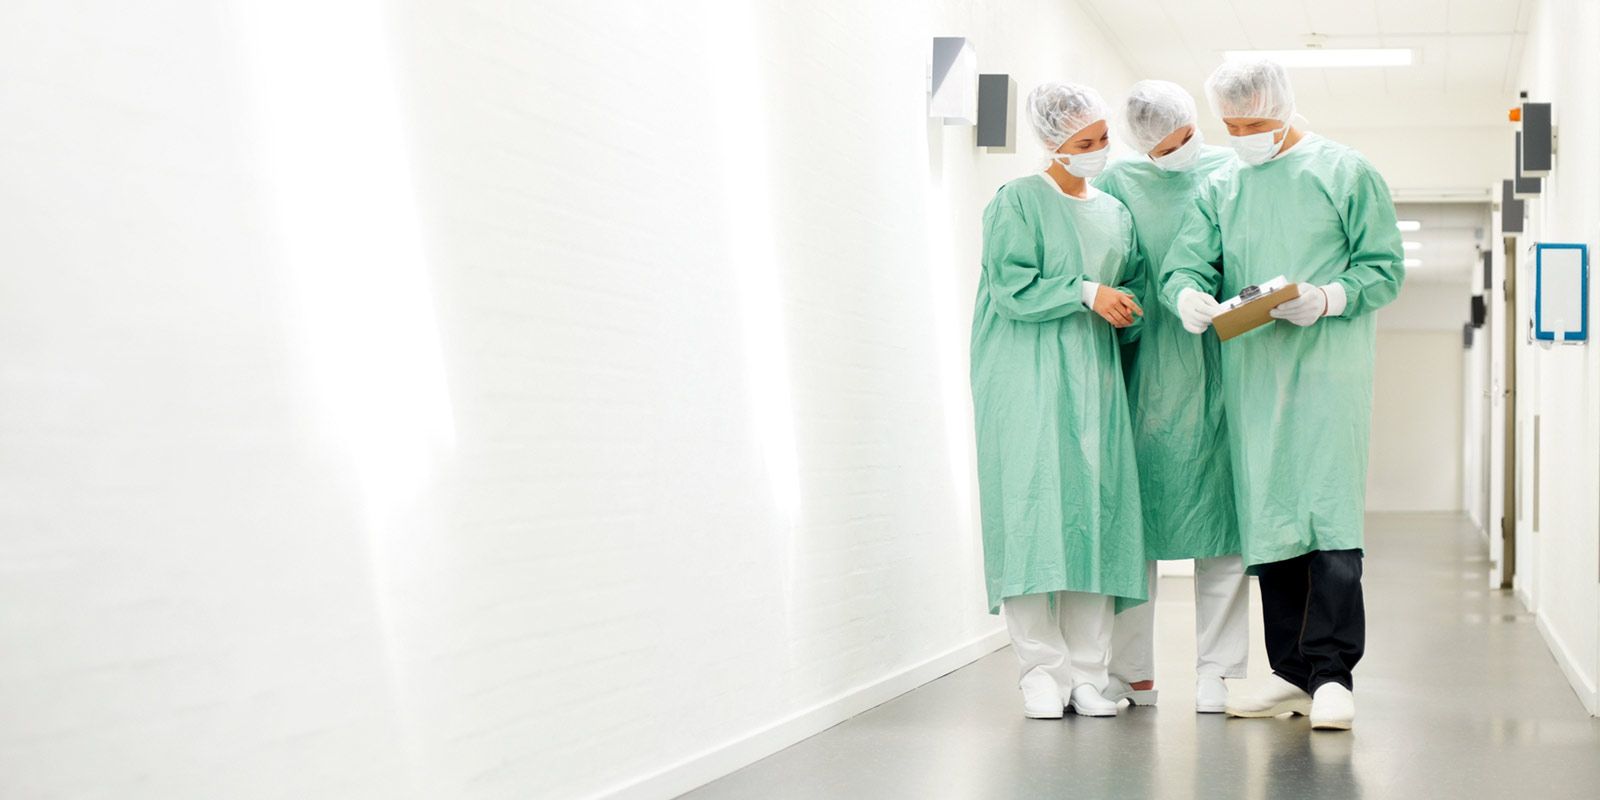 Drei Personen unterschiedlichen Geschlechts in OP-Kleidung stehen in einem Krankenhausflur und besprechen etwas